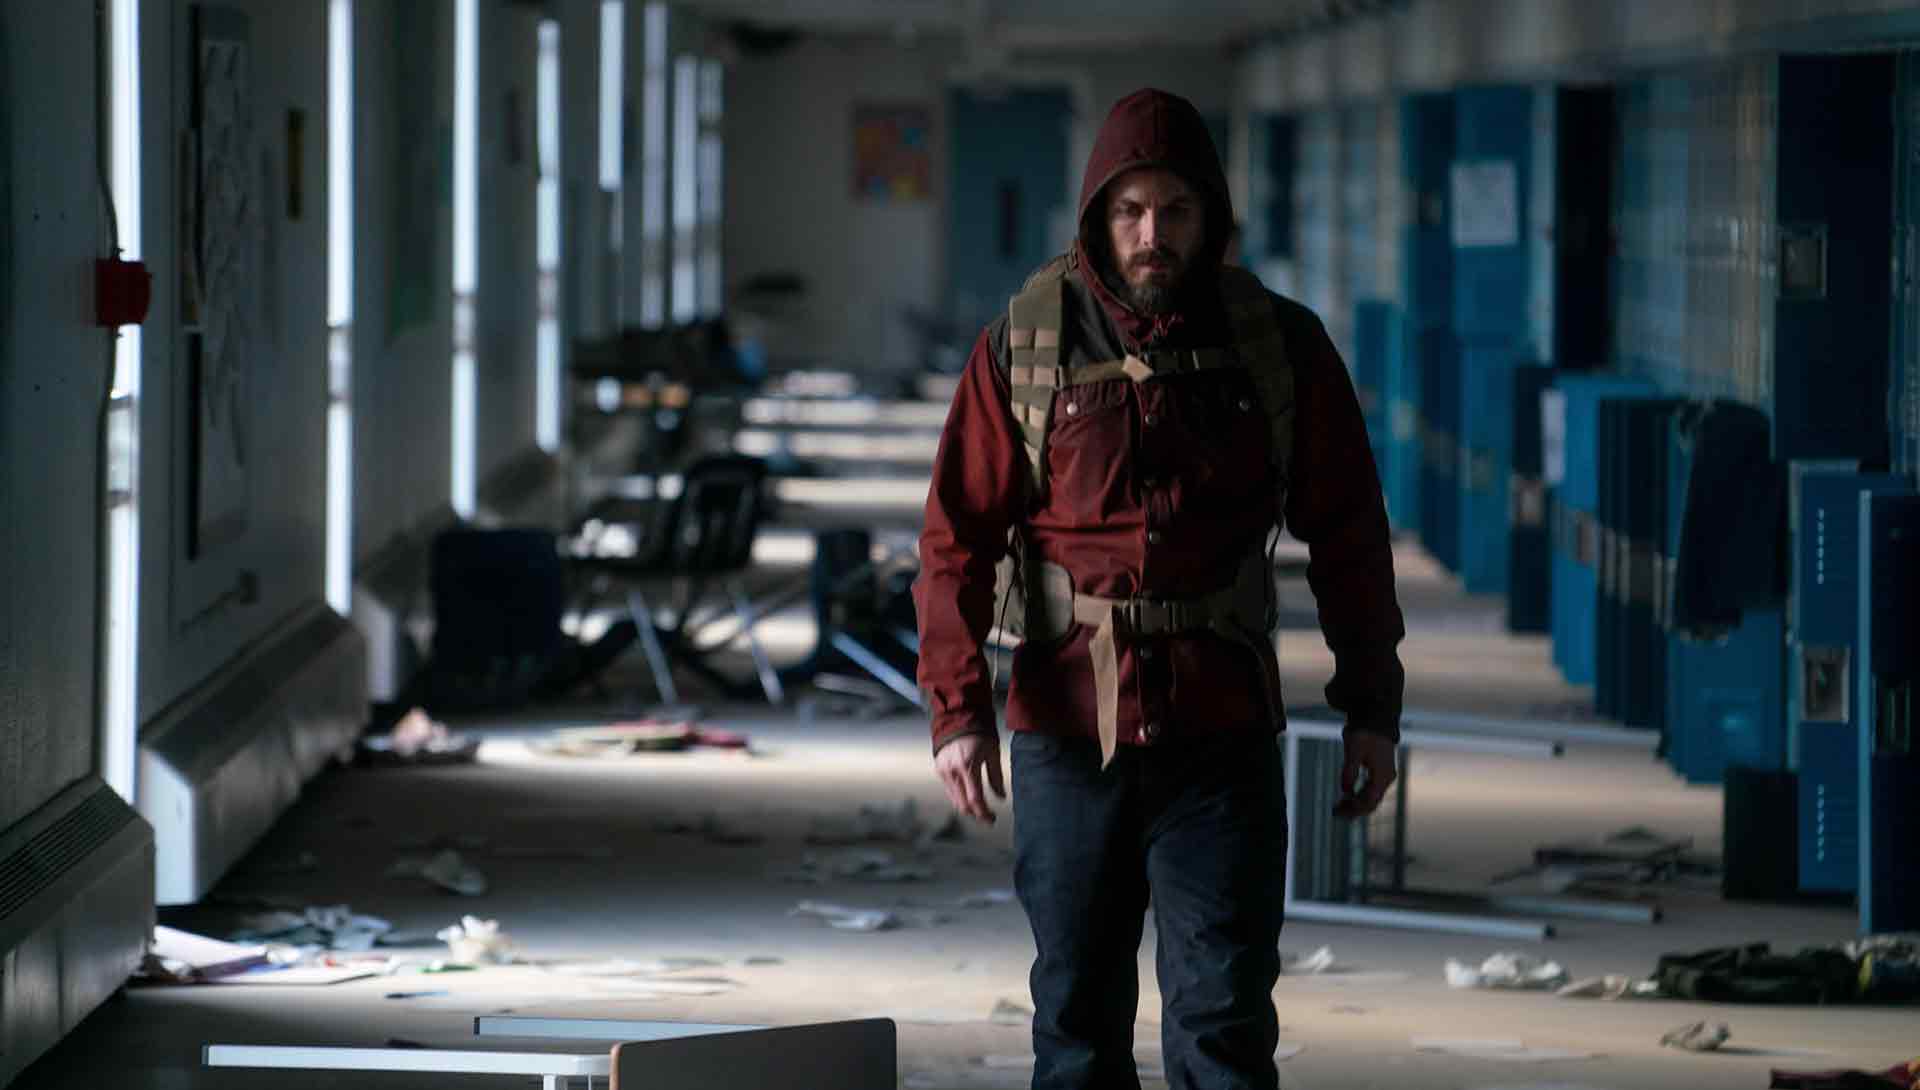 Un survivant dans les couloirs d'une école dans un monde apocalyptique. Extrait du film Light of My Life de Casey Affleck.